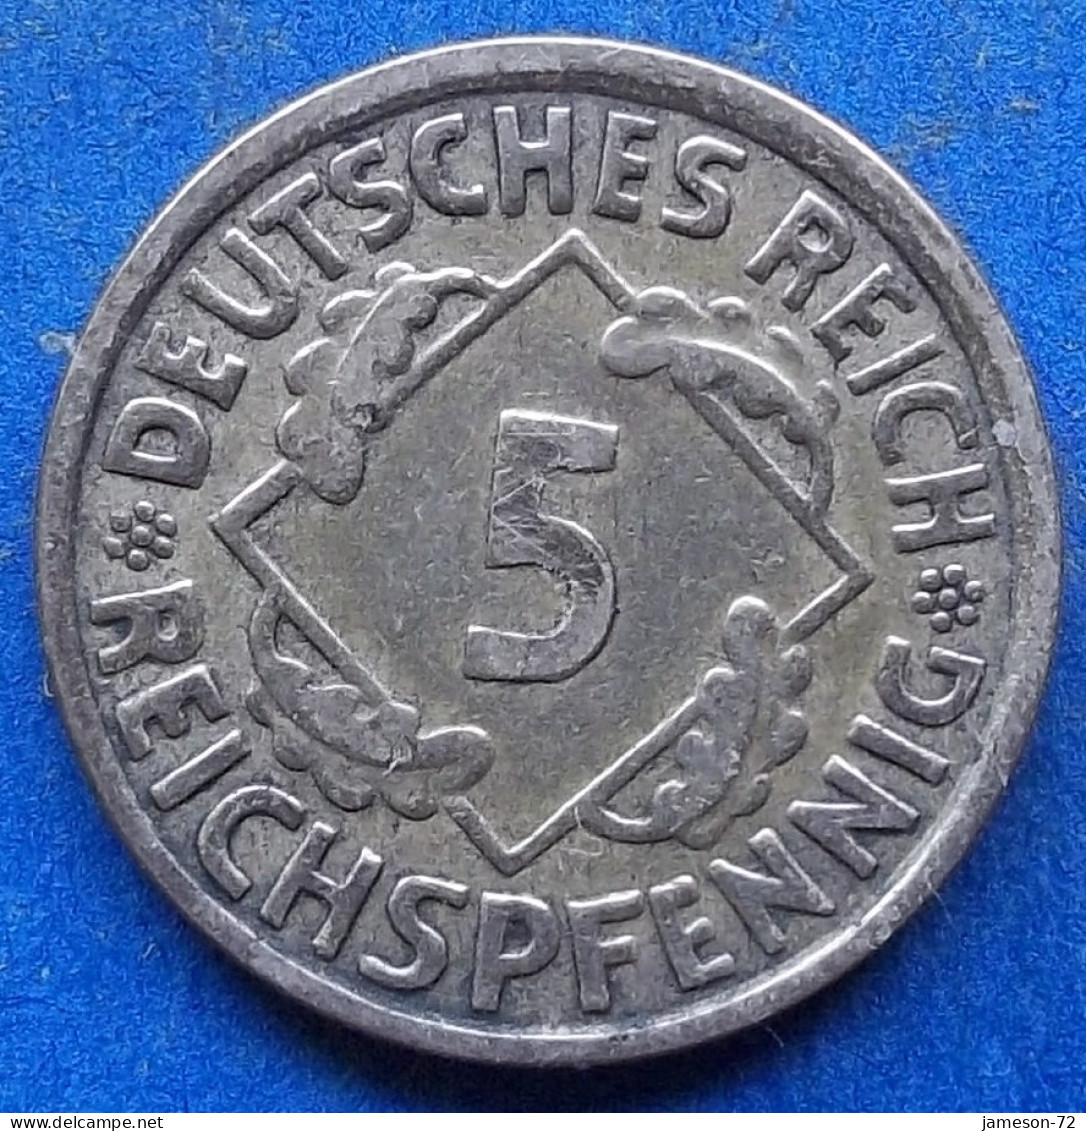 GERMANY - 5 Reichspfennig 1925 F KM# 39 Weimar Republic Reichsmark Coinage (1924-1938) - Edelweiss Coins - 5 Rentenpfennig & 5 Reichspfennig